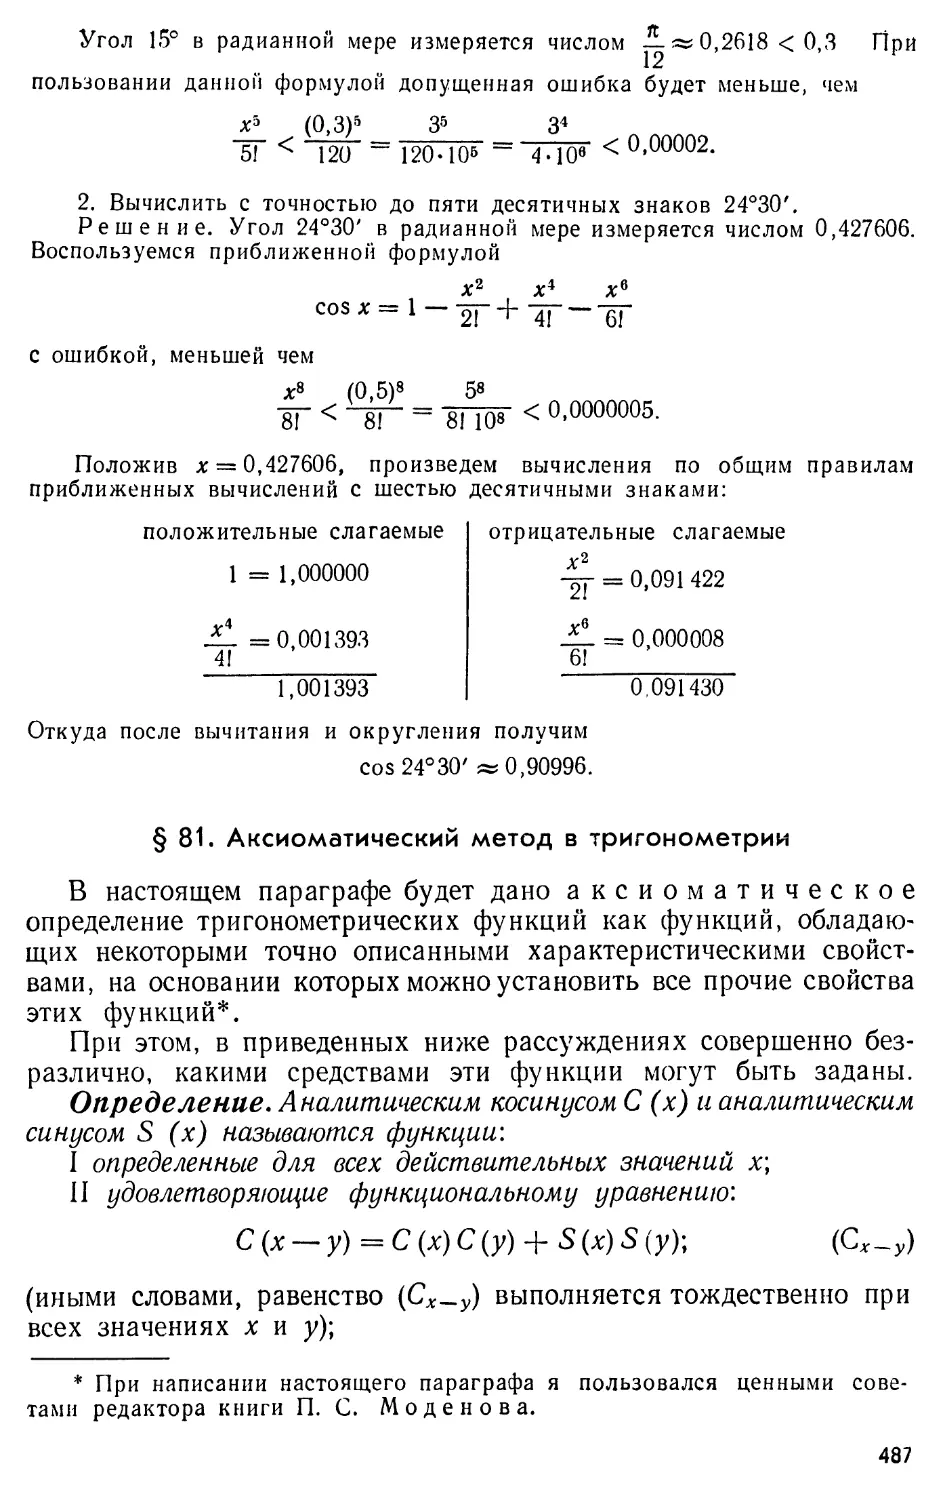 § 81. Аксиоматический метод в тригонометрии